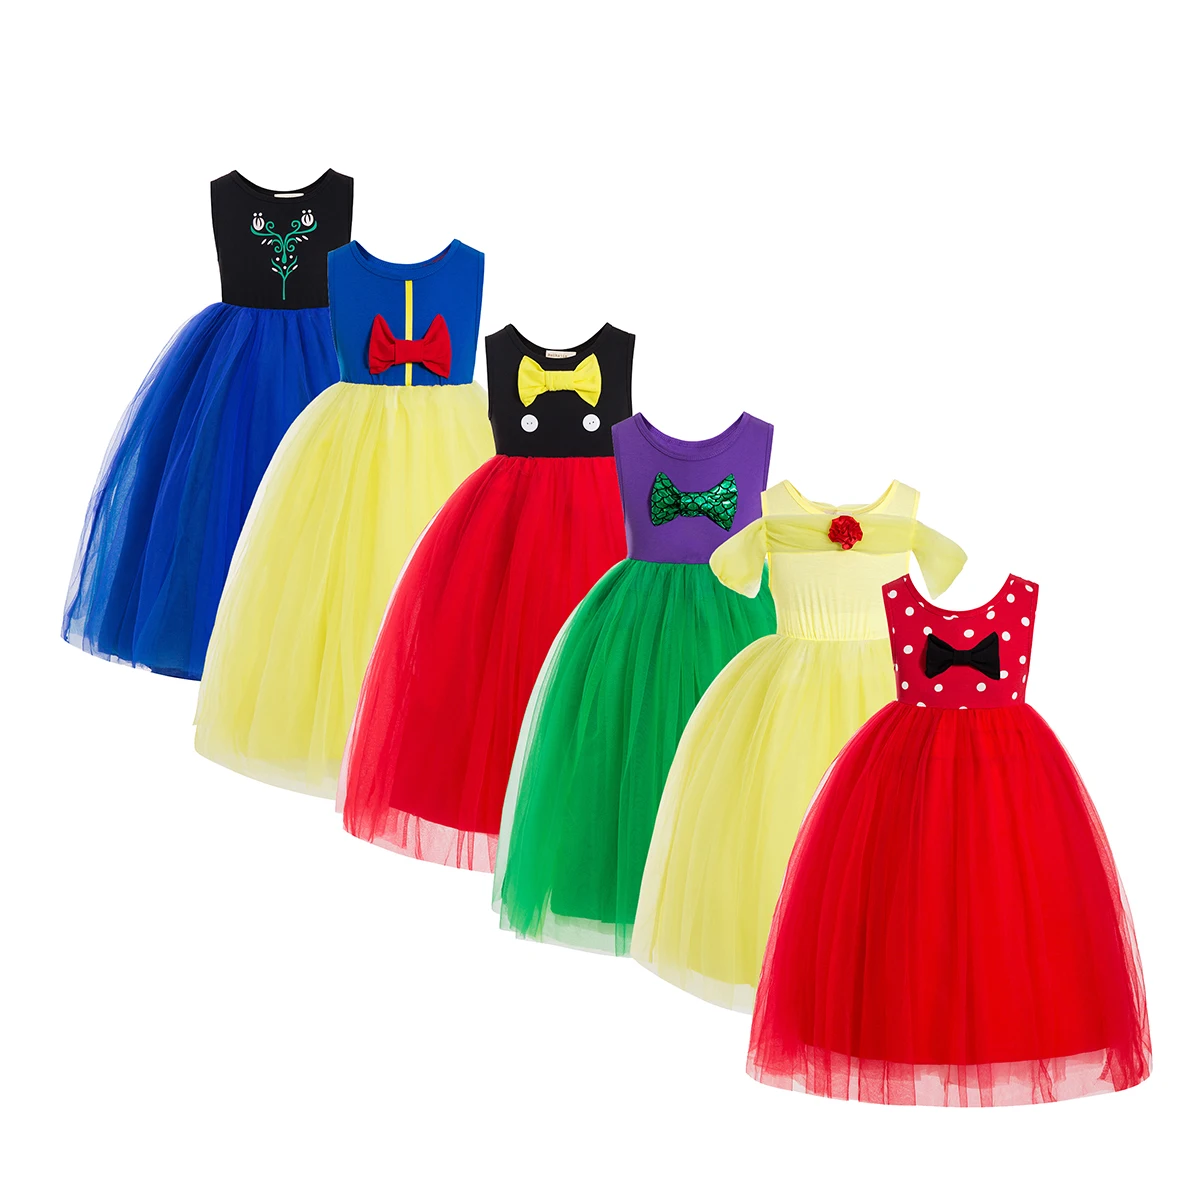 Minnie Tutu Dress For Kids